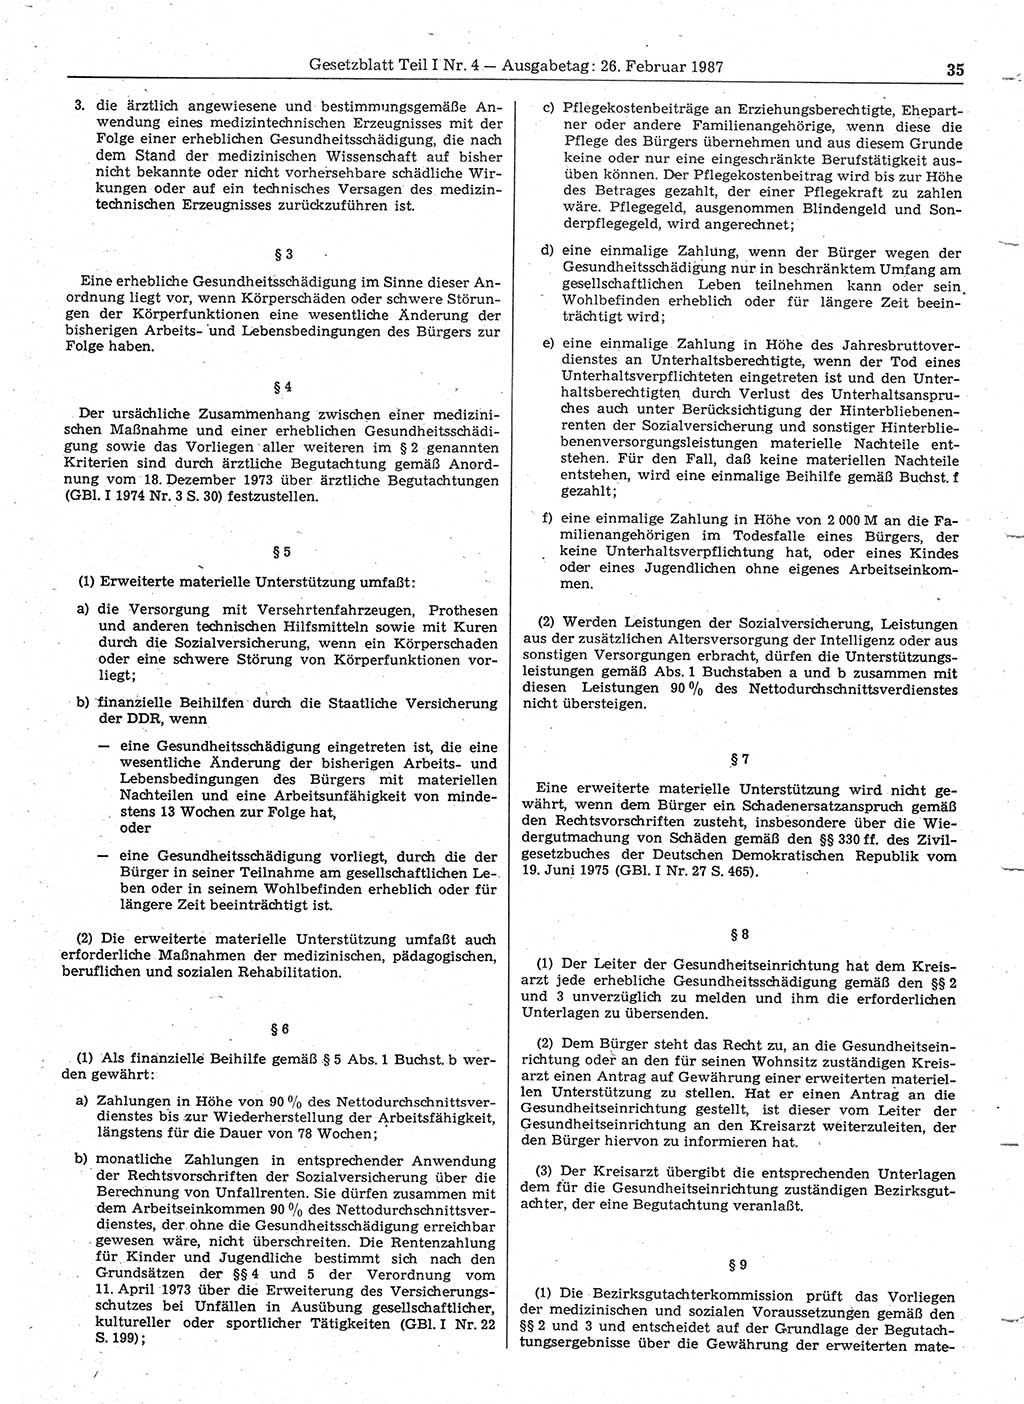 Gesetzblatt (GBl.) der Deutschen Demokratischen Republik (DDR) Teil Ⅰ 1987, Seite 35 (GBl. DDR Ⅰ 1987, S. 35)